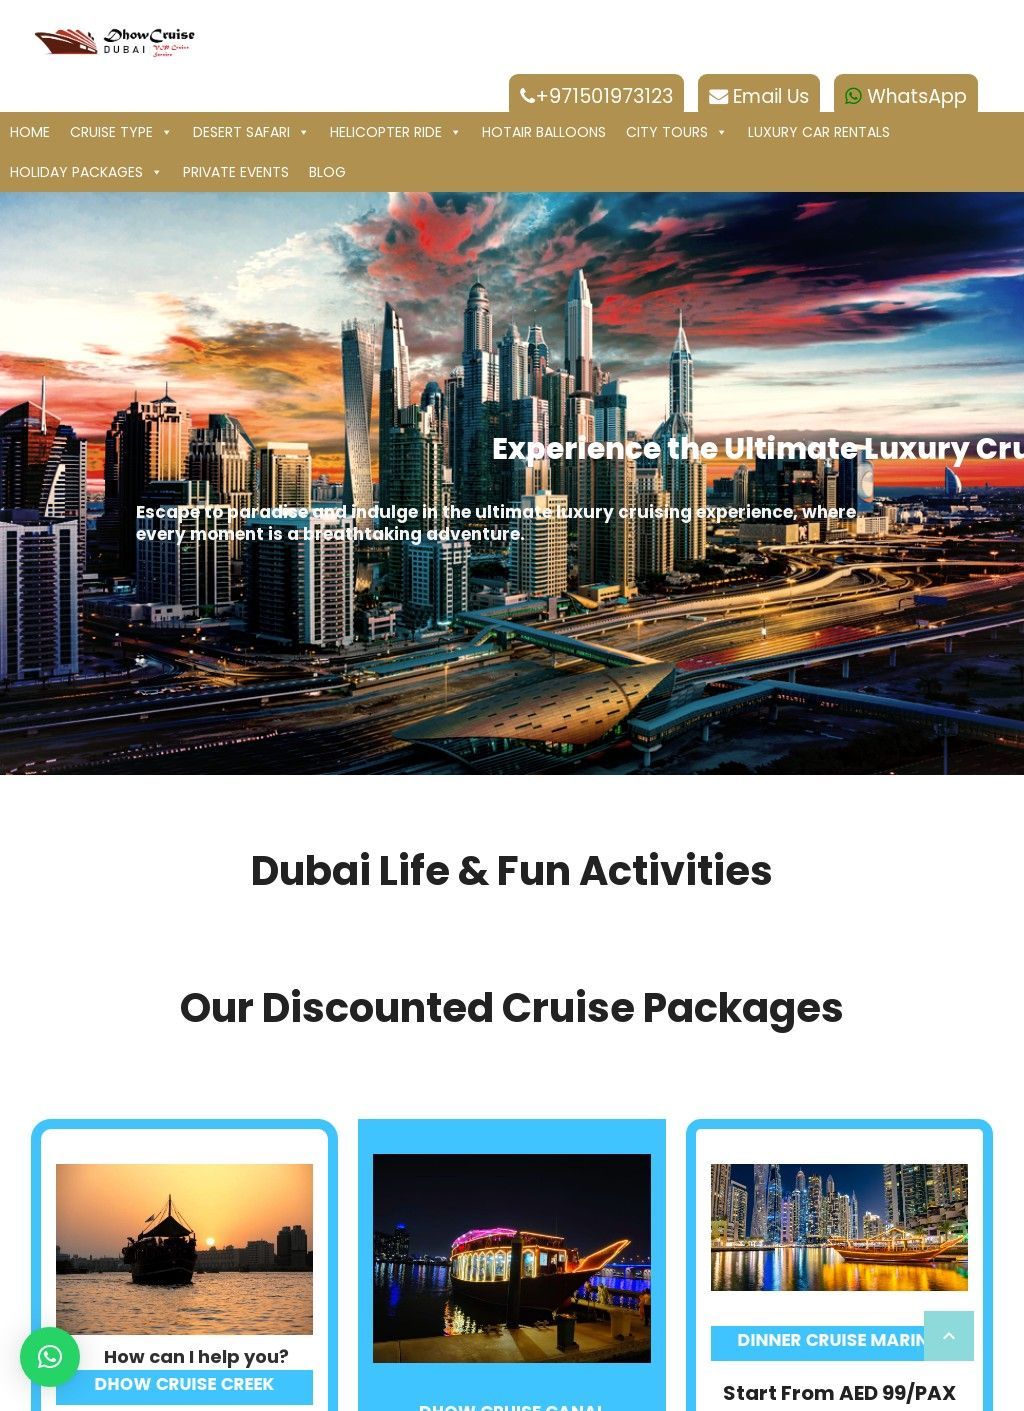 VIP Dhow Cruise UAE - Fun trips in Dubai